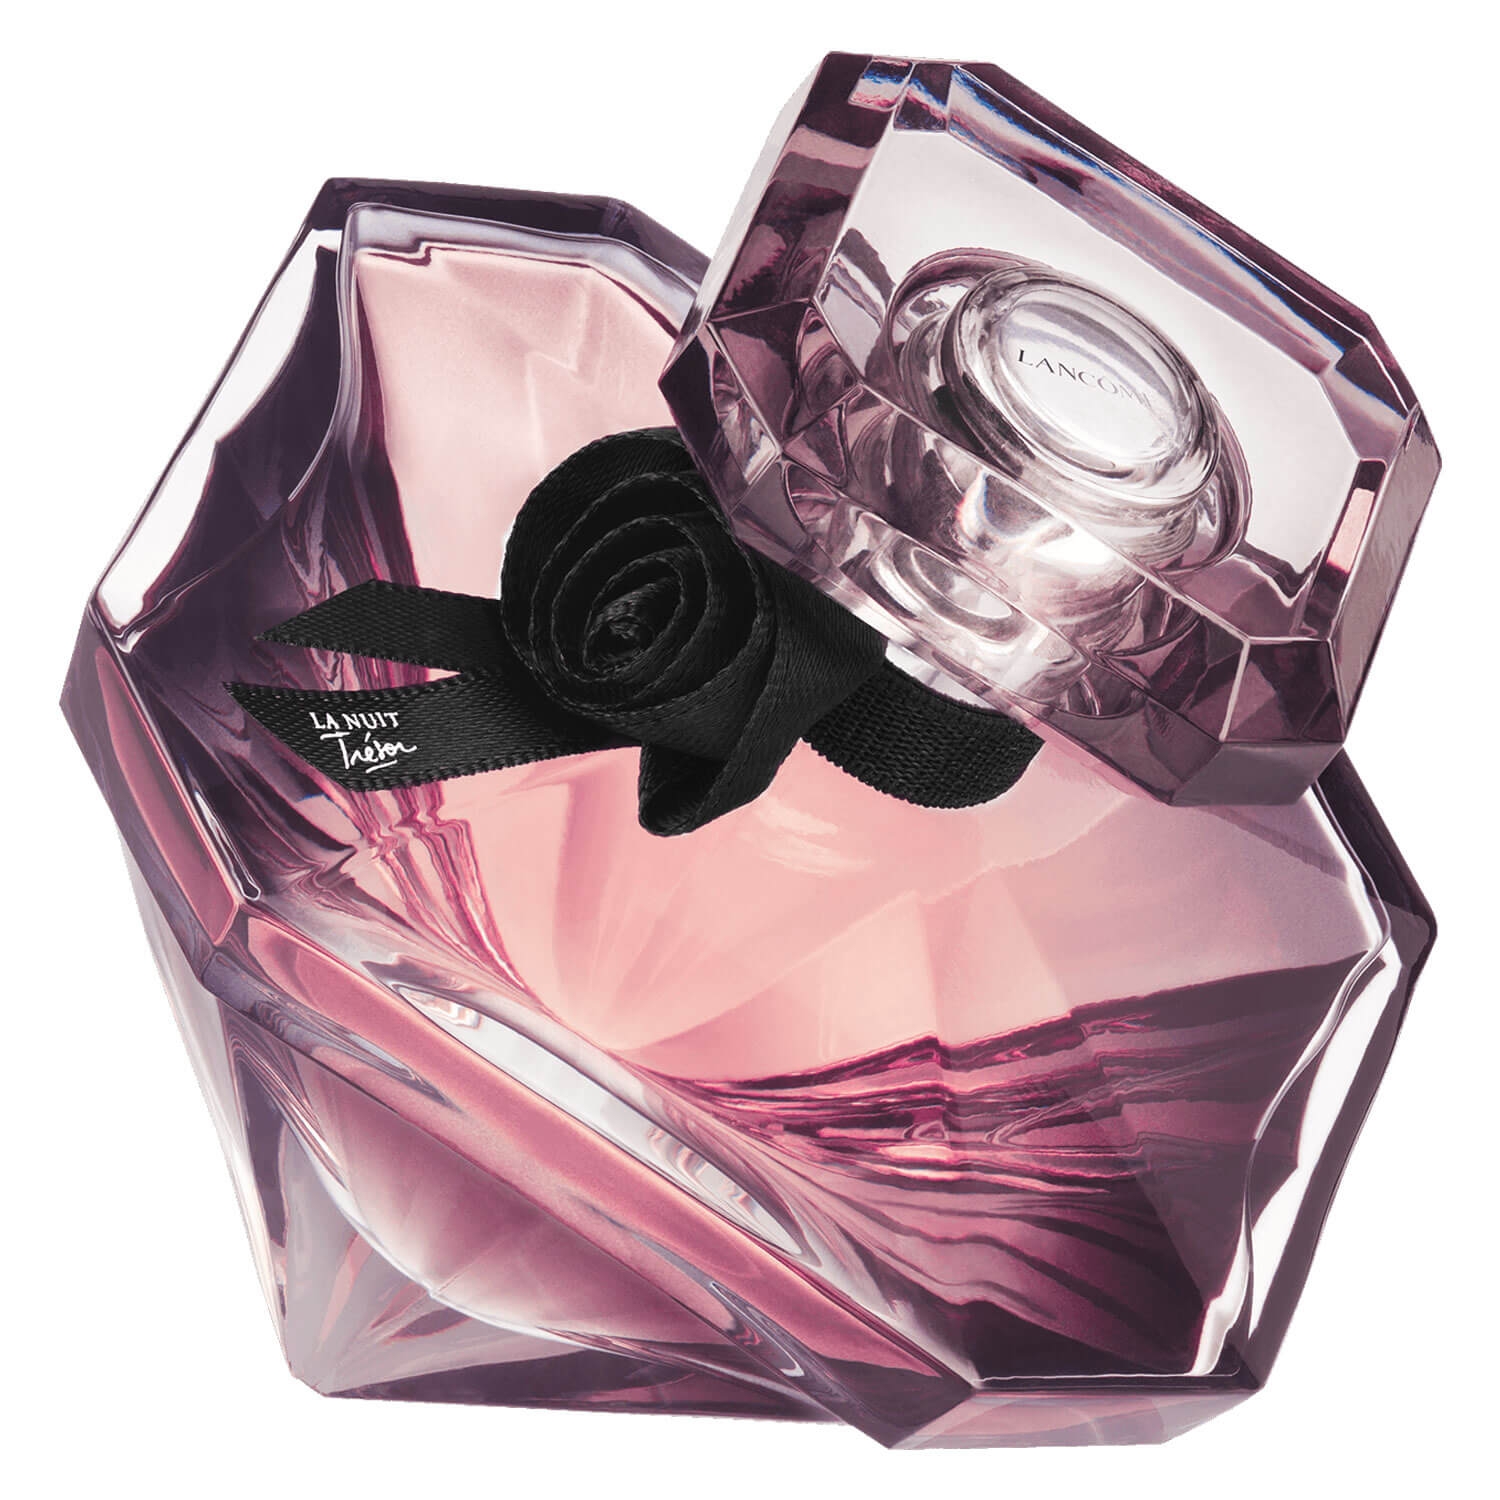 Product image from Trésor - La Nuit Trésor Eau de Parfum